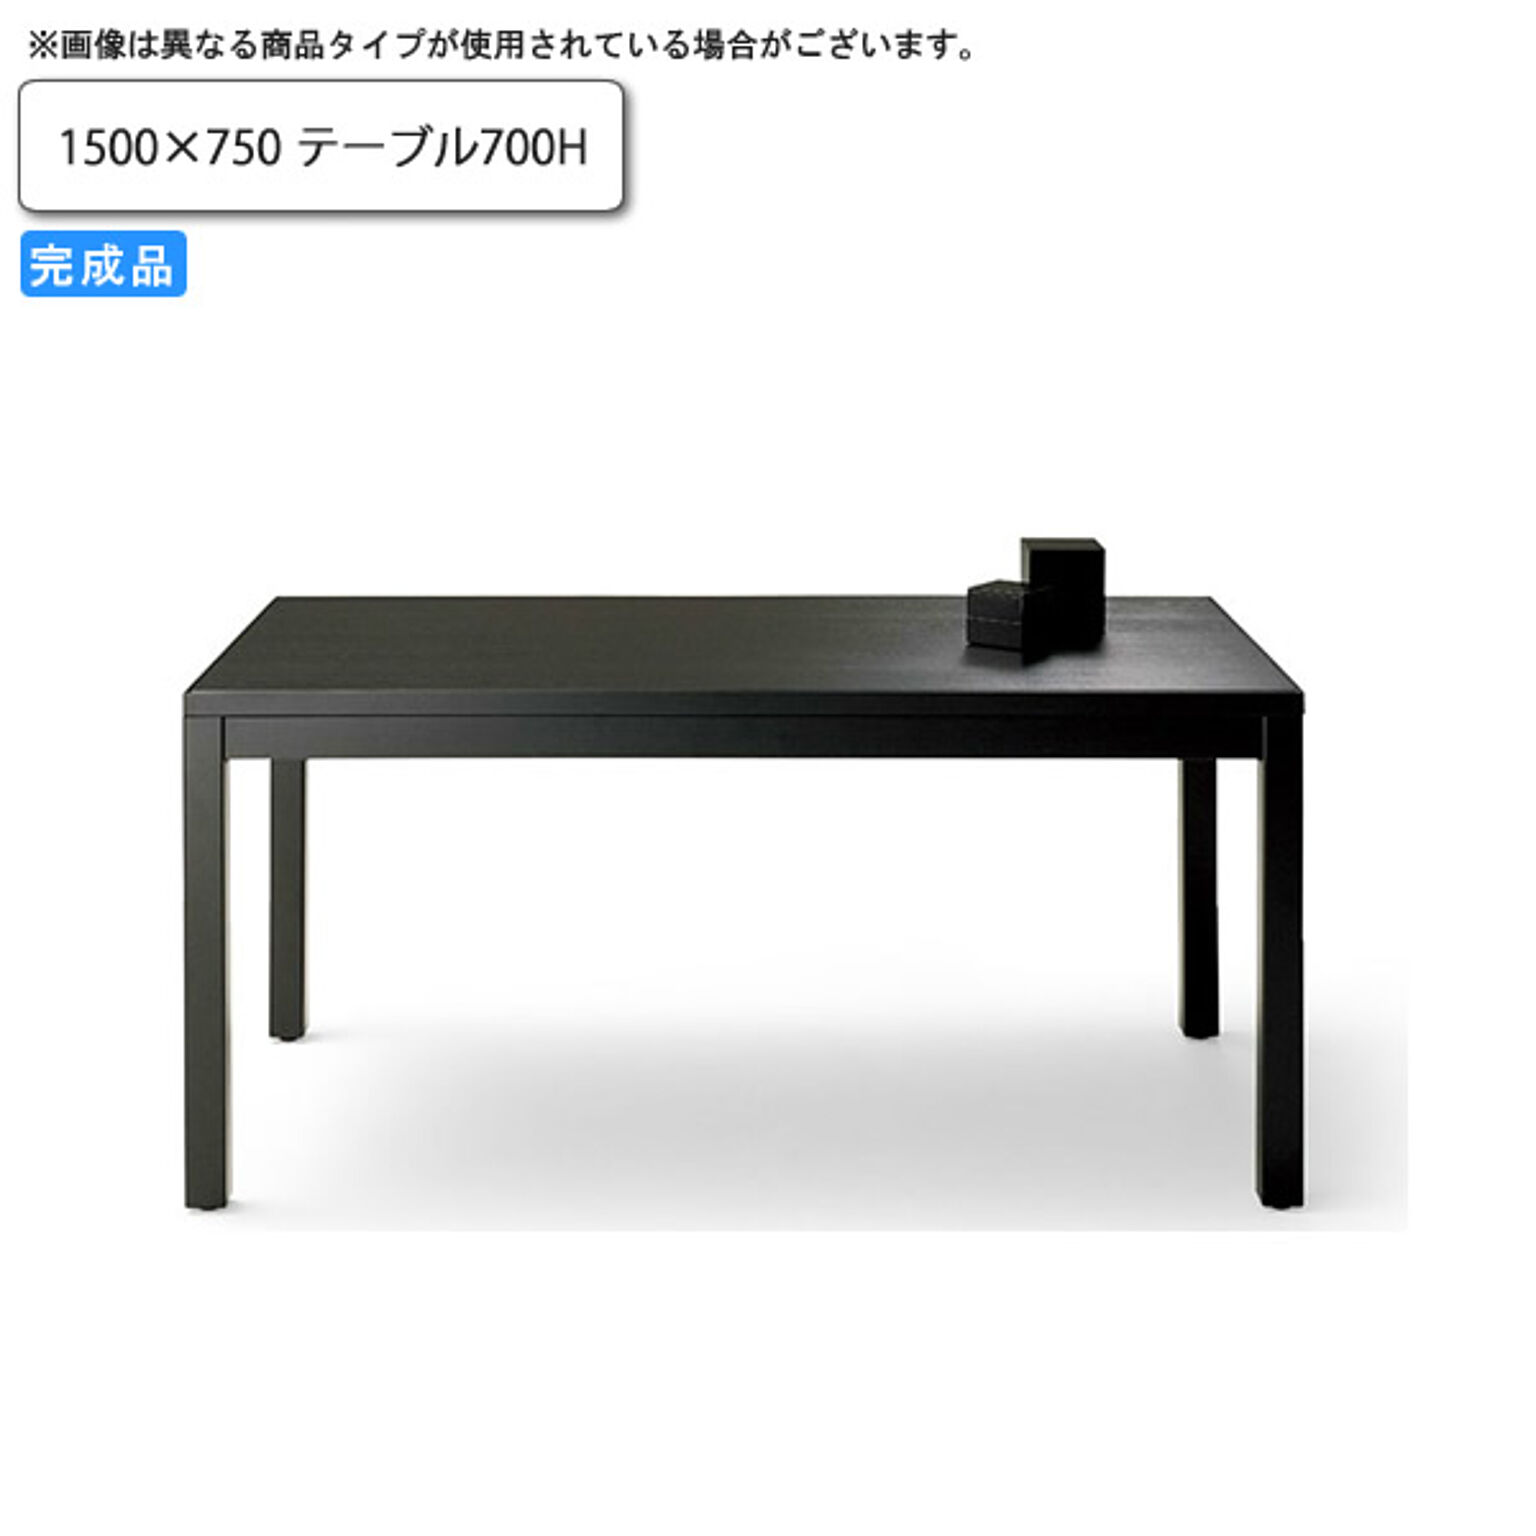 1500×750 テーブル700H ダイニングテーブル 業務用家具：wood japaneseシリーズ★ トリミナ 受注生産 (和風)